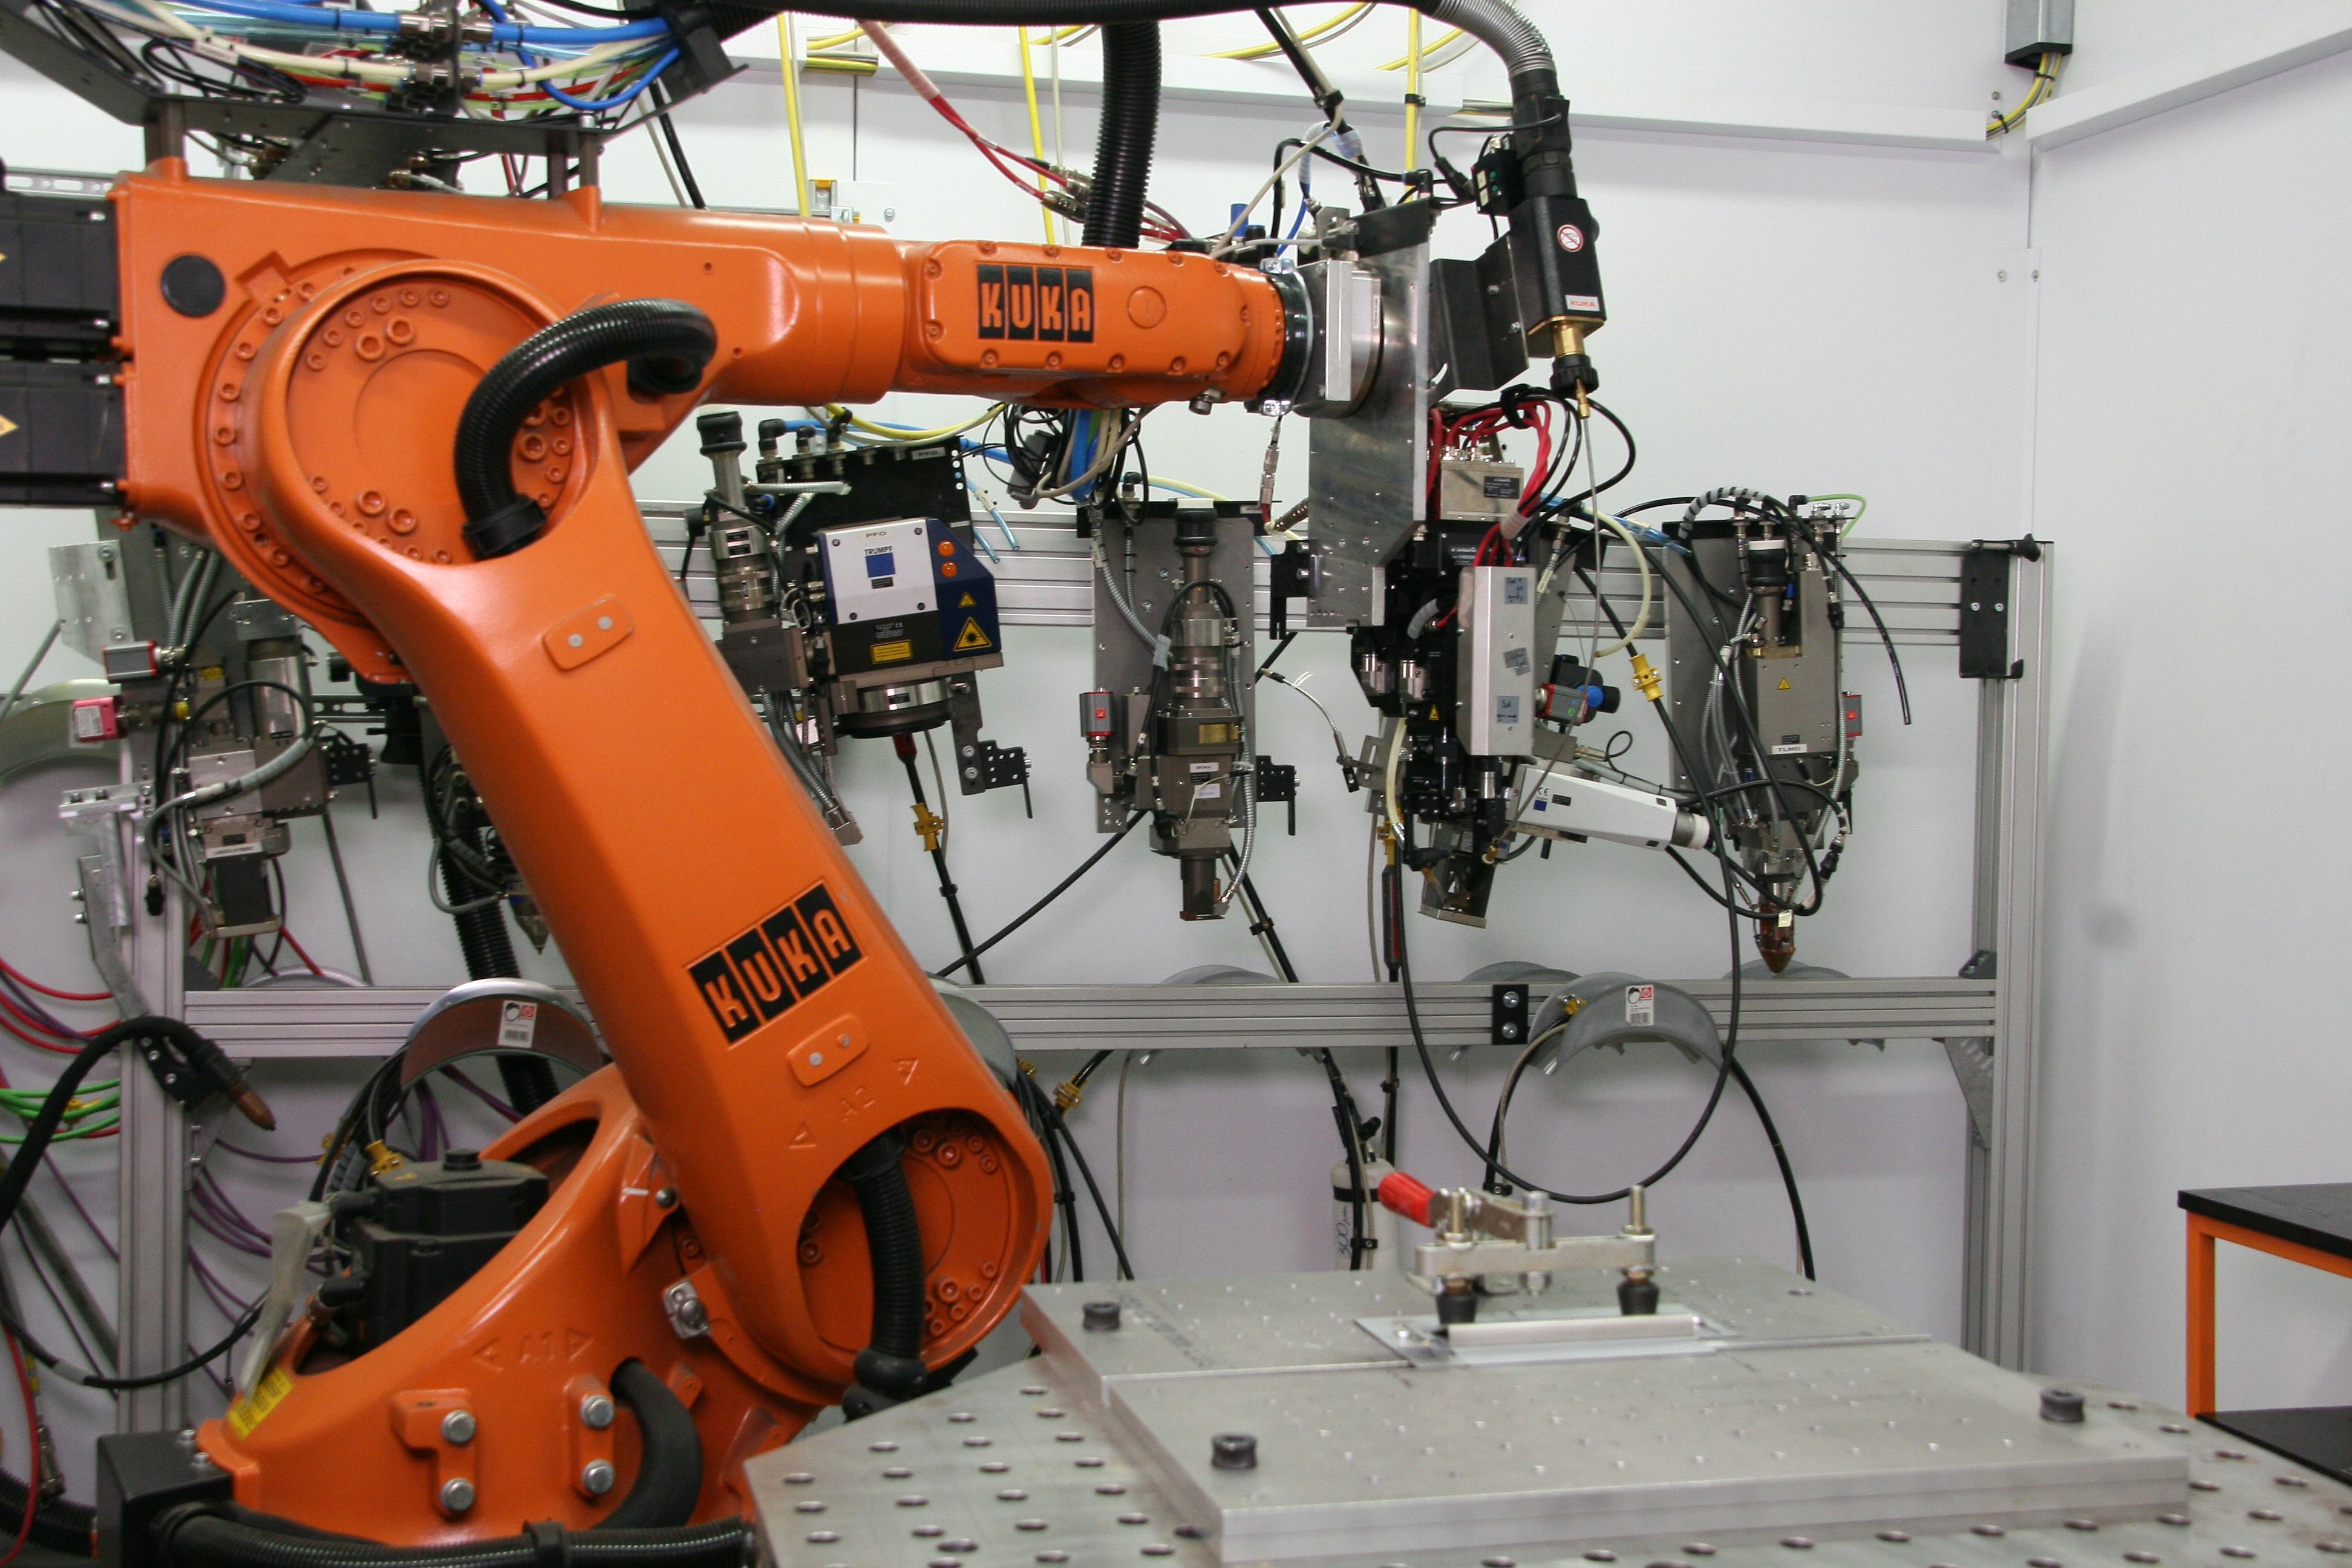 Efektowna robotyzacja musi mieć solidną podstawę – biznesowe uzasadnienie i kompetencje załogi. fot. IMGrobot